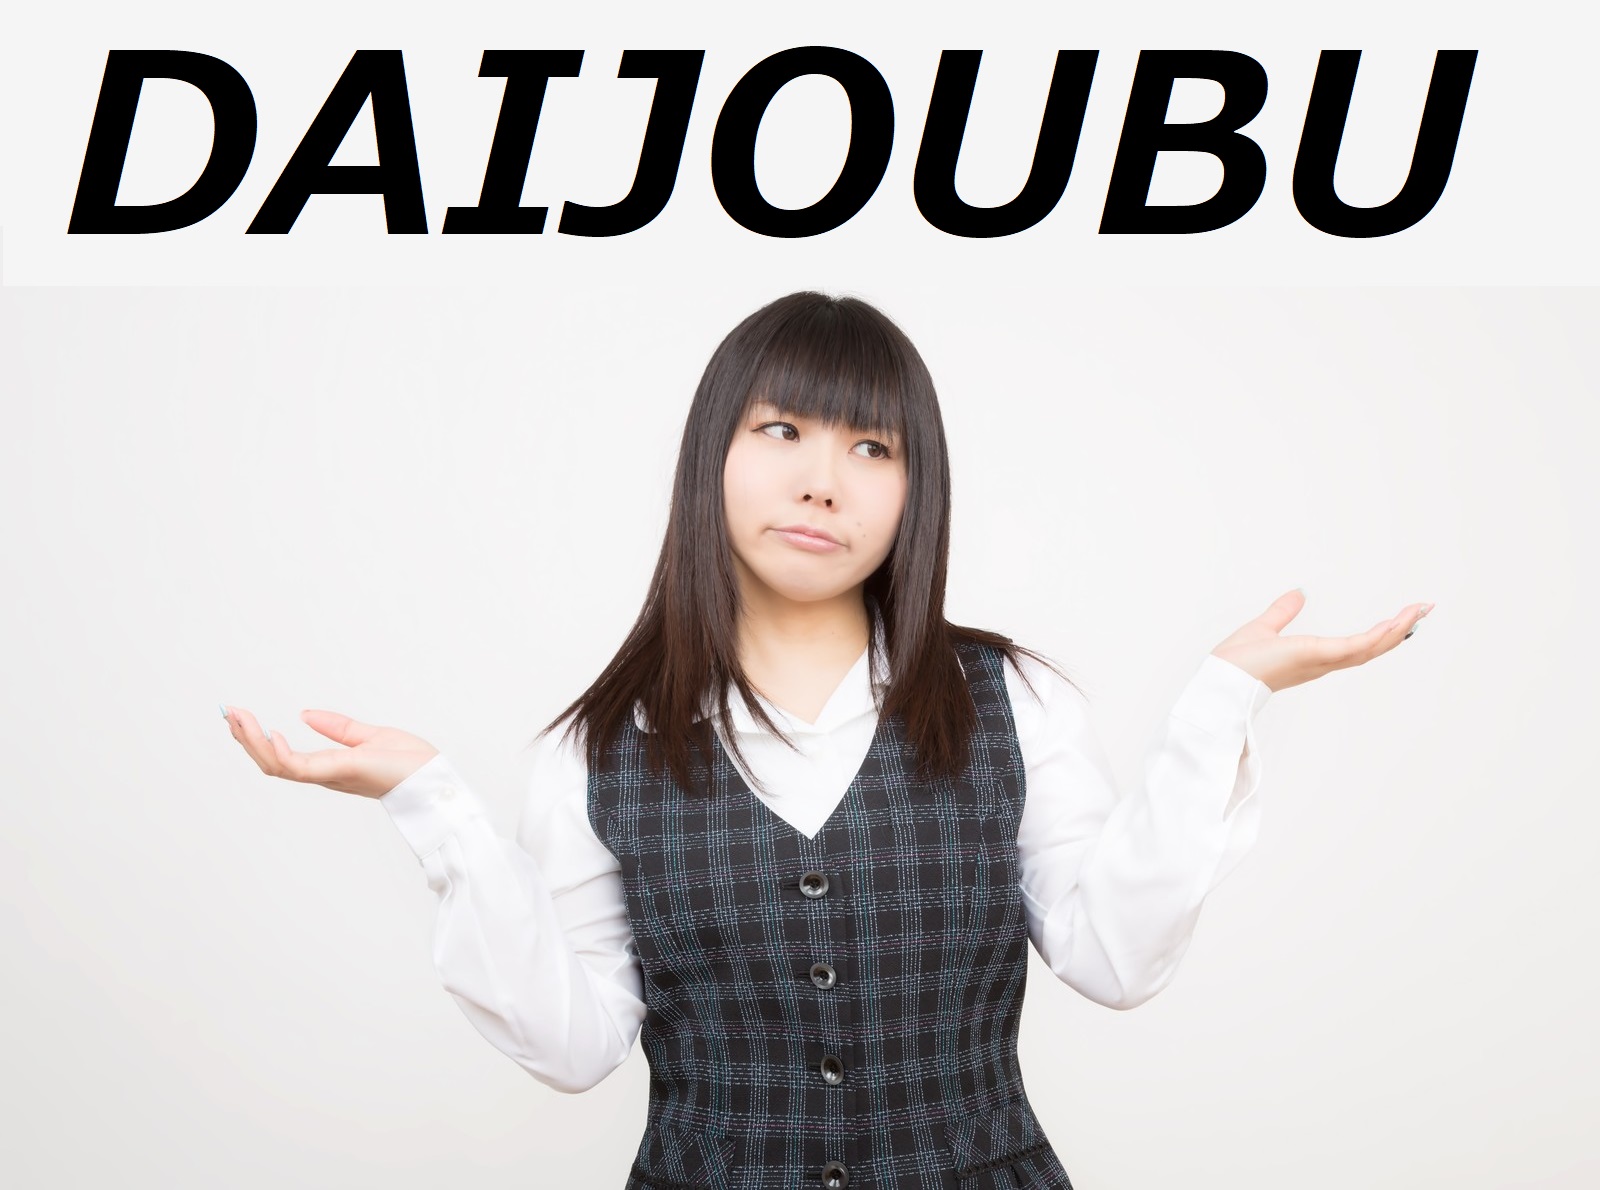 Daijoubu